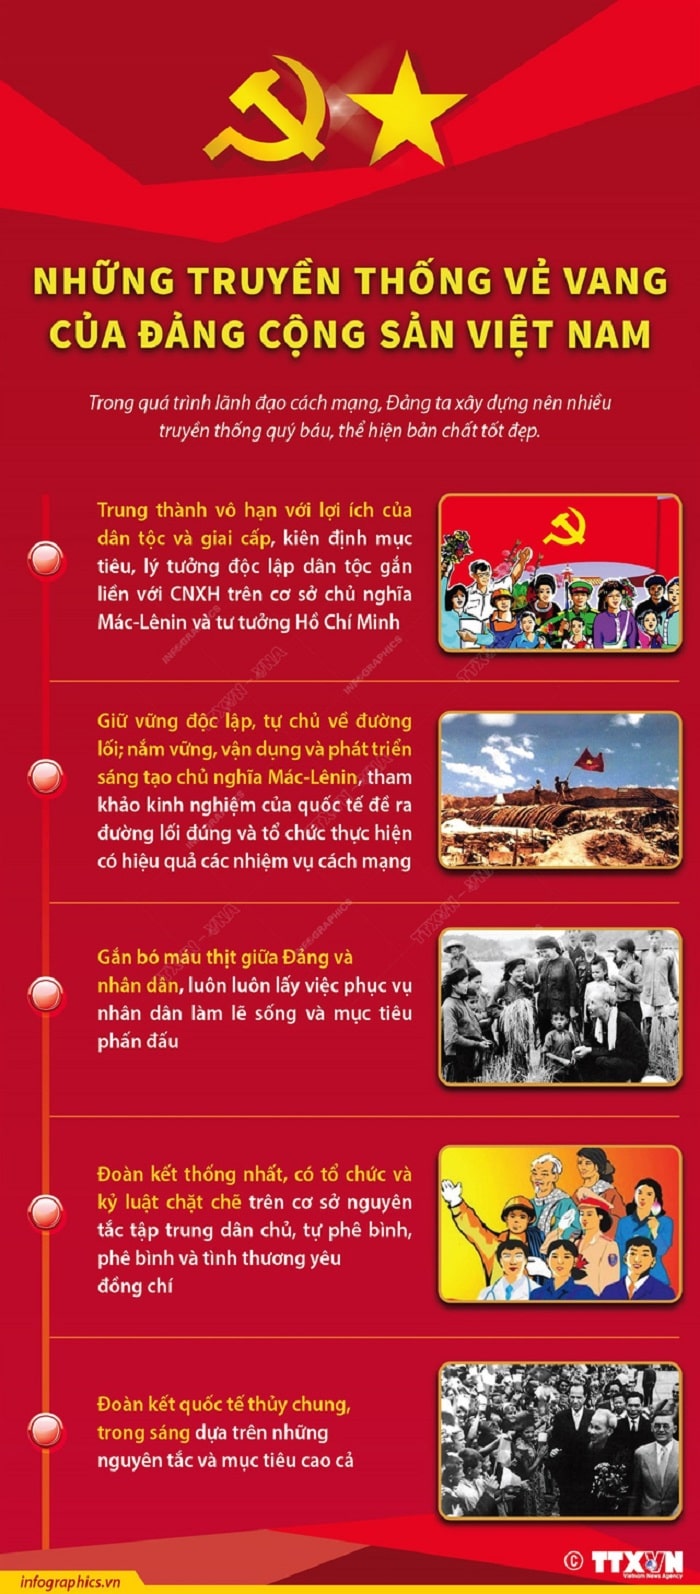 Nhung truyen thong ve vang cua Dang Cong san Viet Nam min - Những truyền thống vẻ vang của Đảng Cộng sản Việt Nam